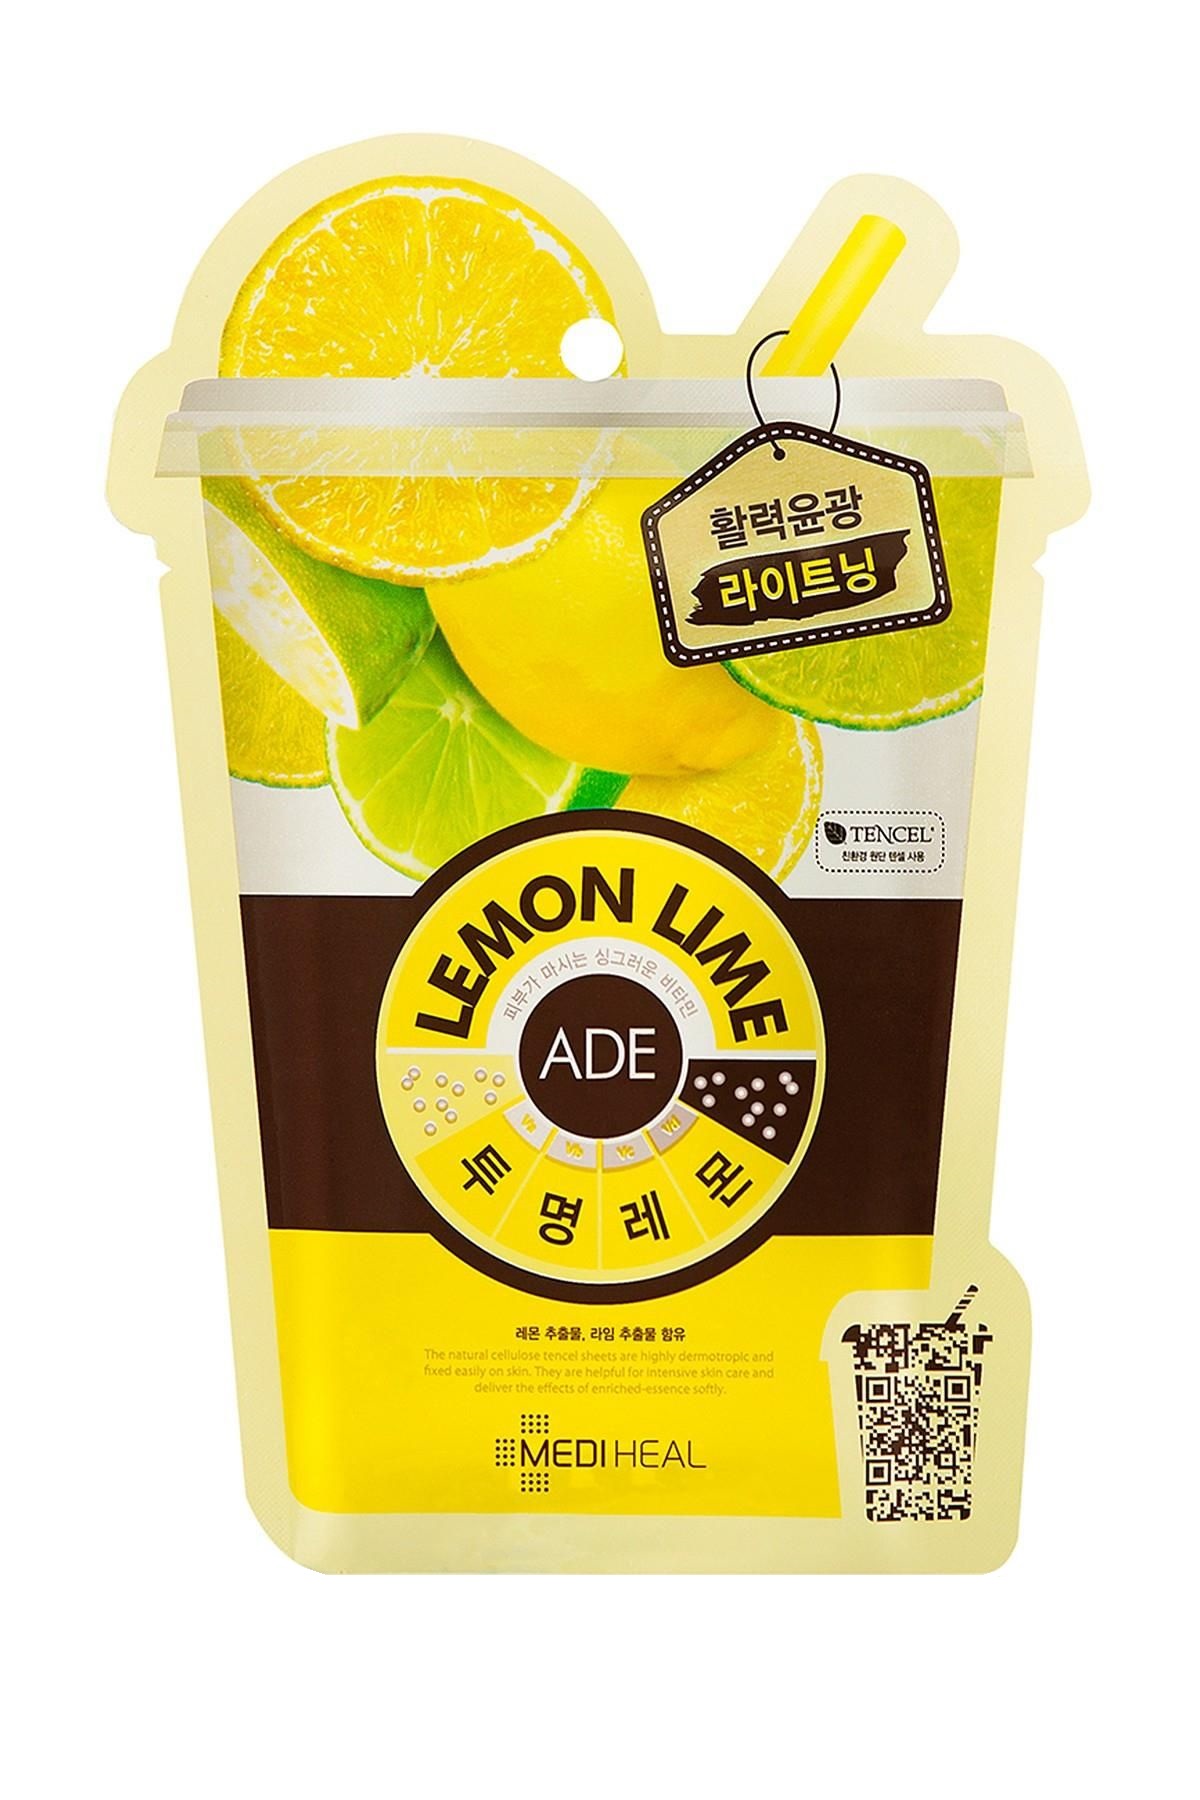 Mediheal Lemon Lime Ade Mask - Gangnam